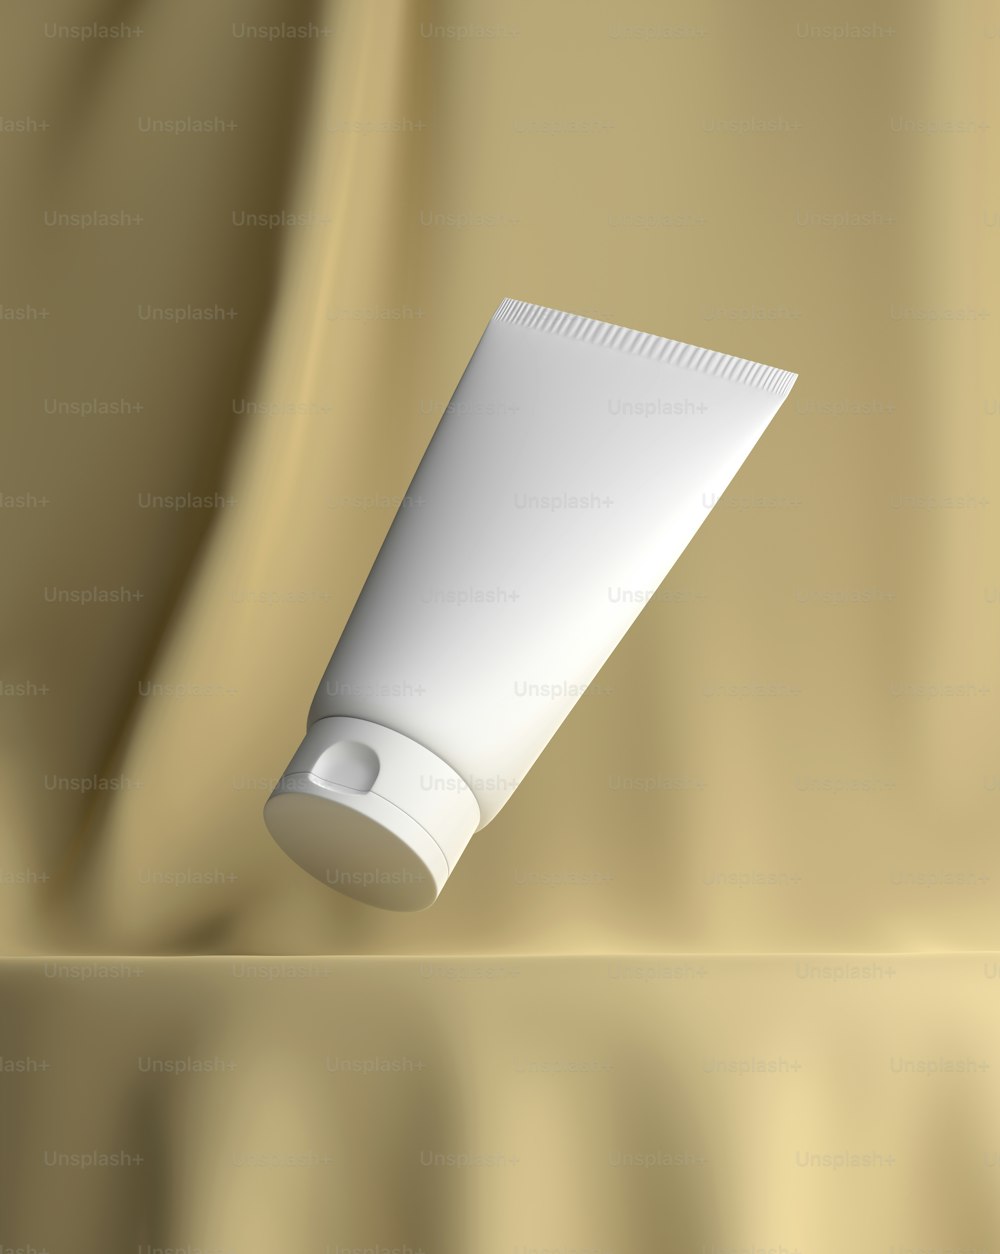 un tubo bianco di crema seduto sopra un panno marrone chiaro